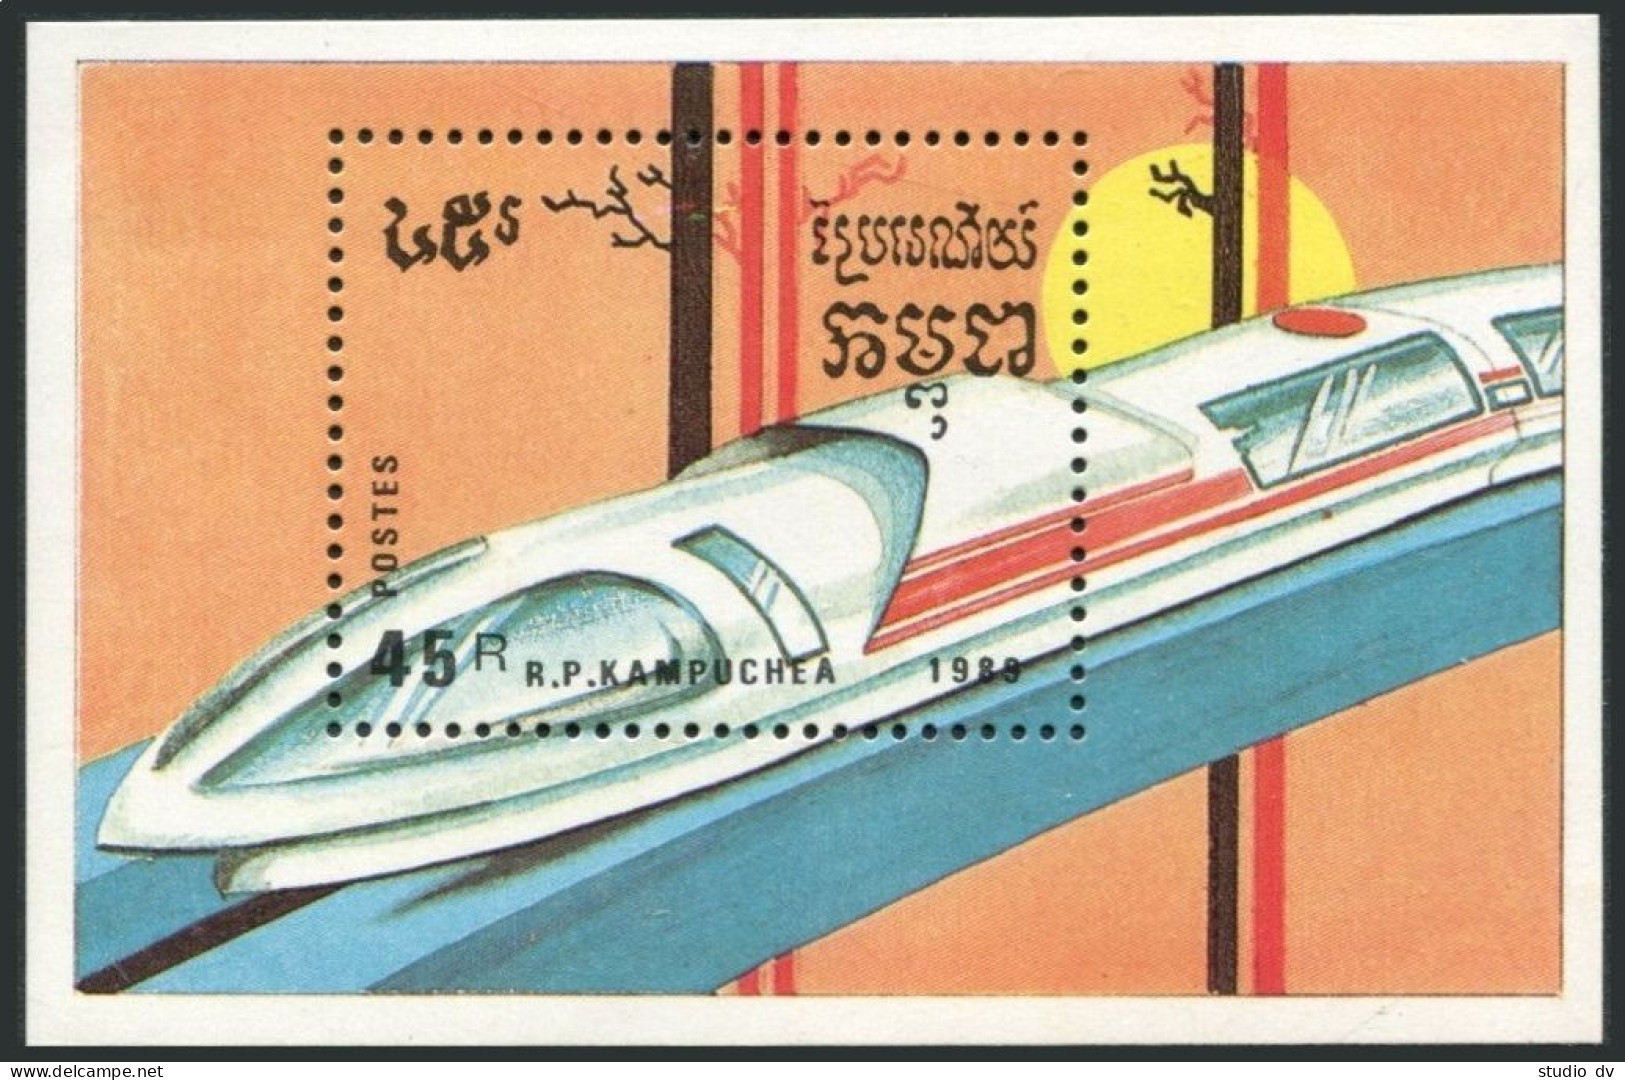 Cambodia 929-935,936,MNH.Michel 1007-1013,Bl.163. Trains,Locomotives 1989. - Cambodia